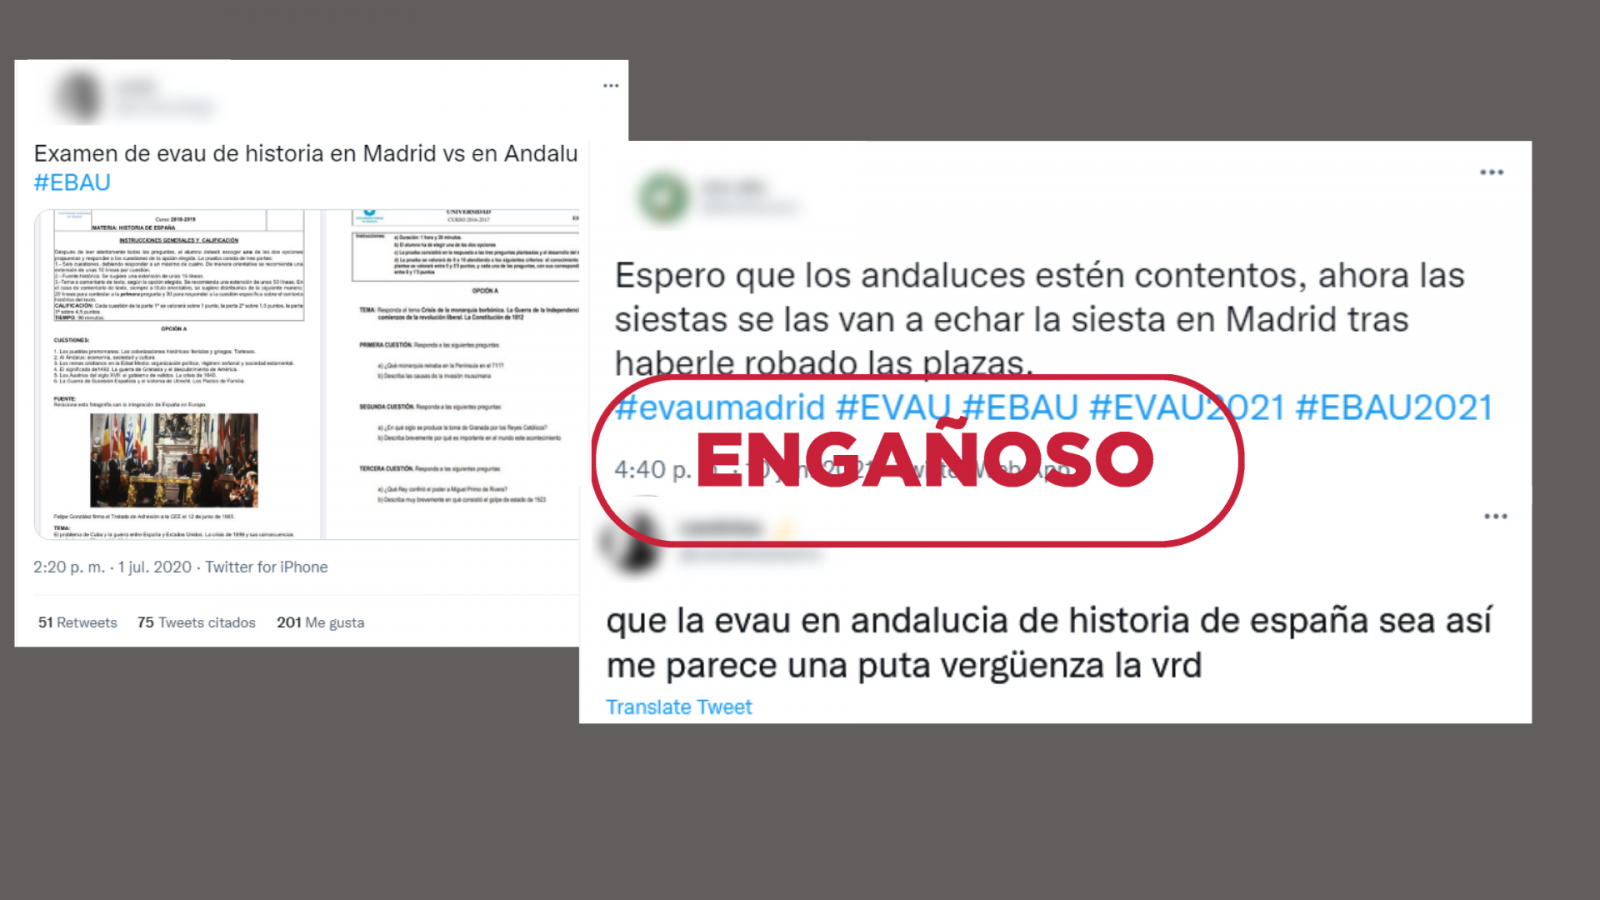 Mensajes de redes sociales sobre la EBAU 2022 en Andalucía y Madrid, con el sello 'Engañoso' en rojo